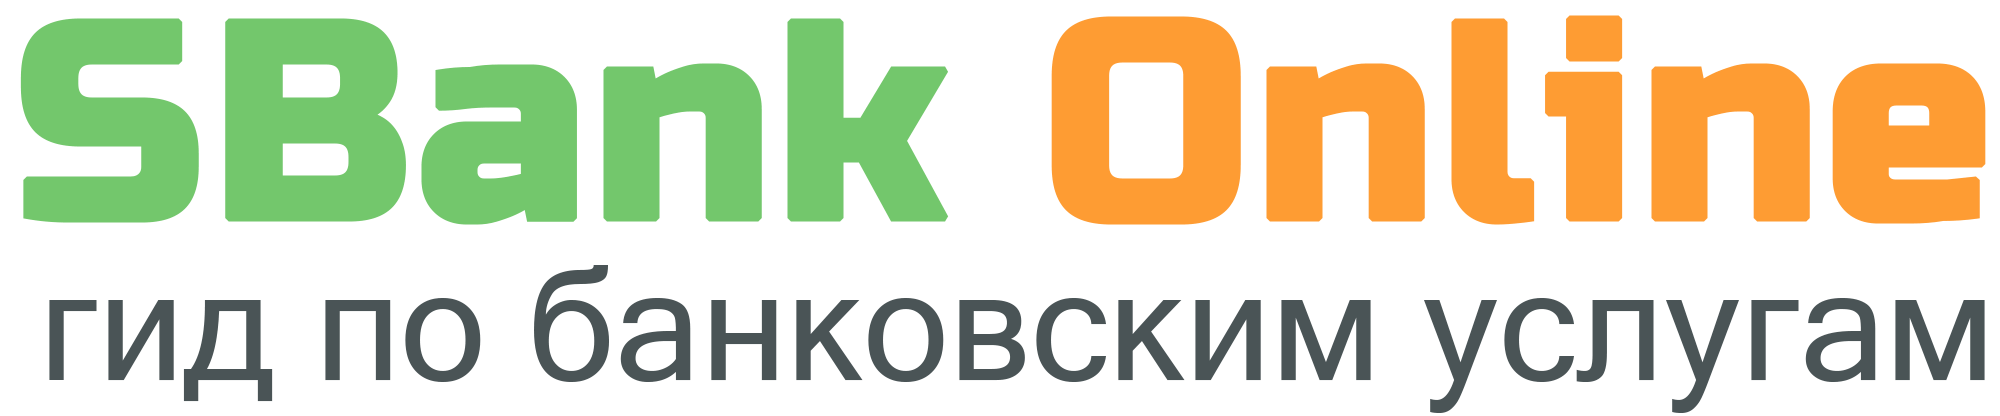 Sberbank-online